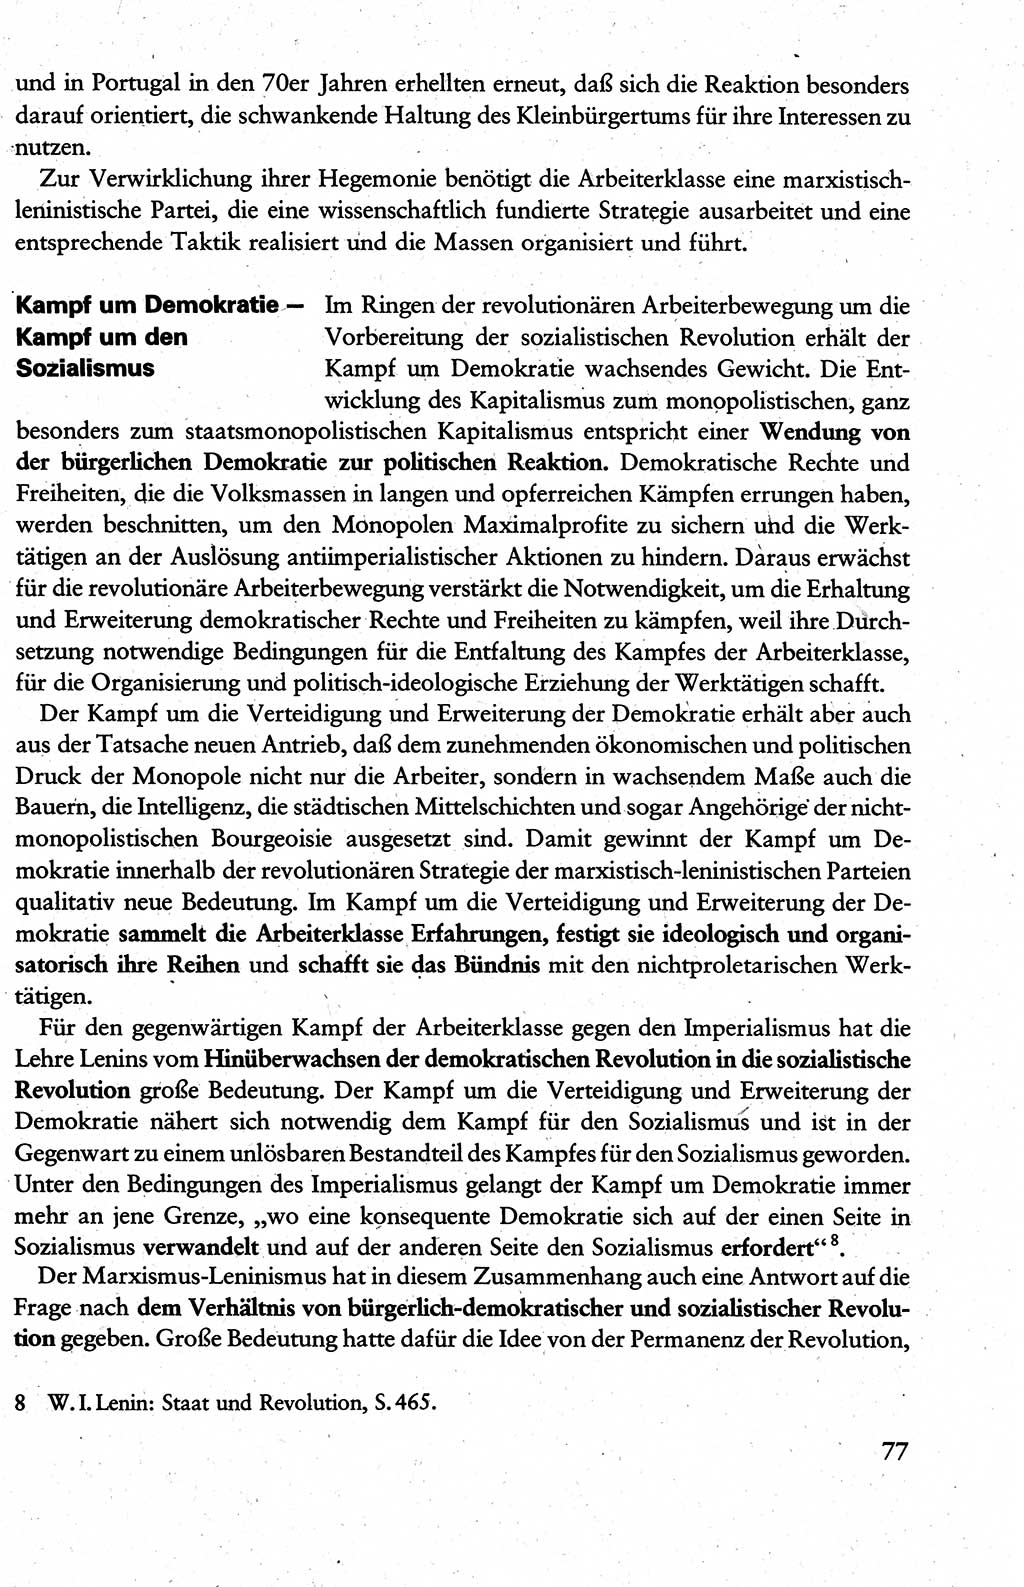 Wissenschaftlicher Kommunismus [Deutsche Demokratische Republik (DDR)], Lehrbuch für das marxistisch-leninistische Grundlagenstudium 1983, Seite 77 (Wiss. Komm. DDR Lb. 1983, S. 77)